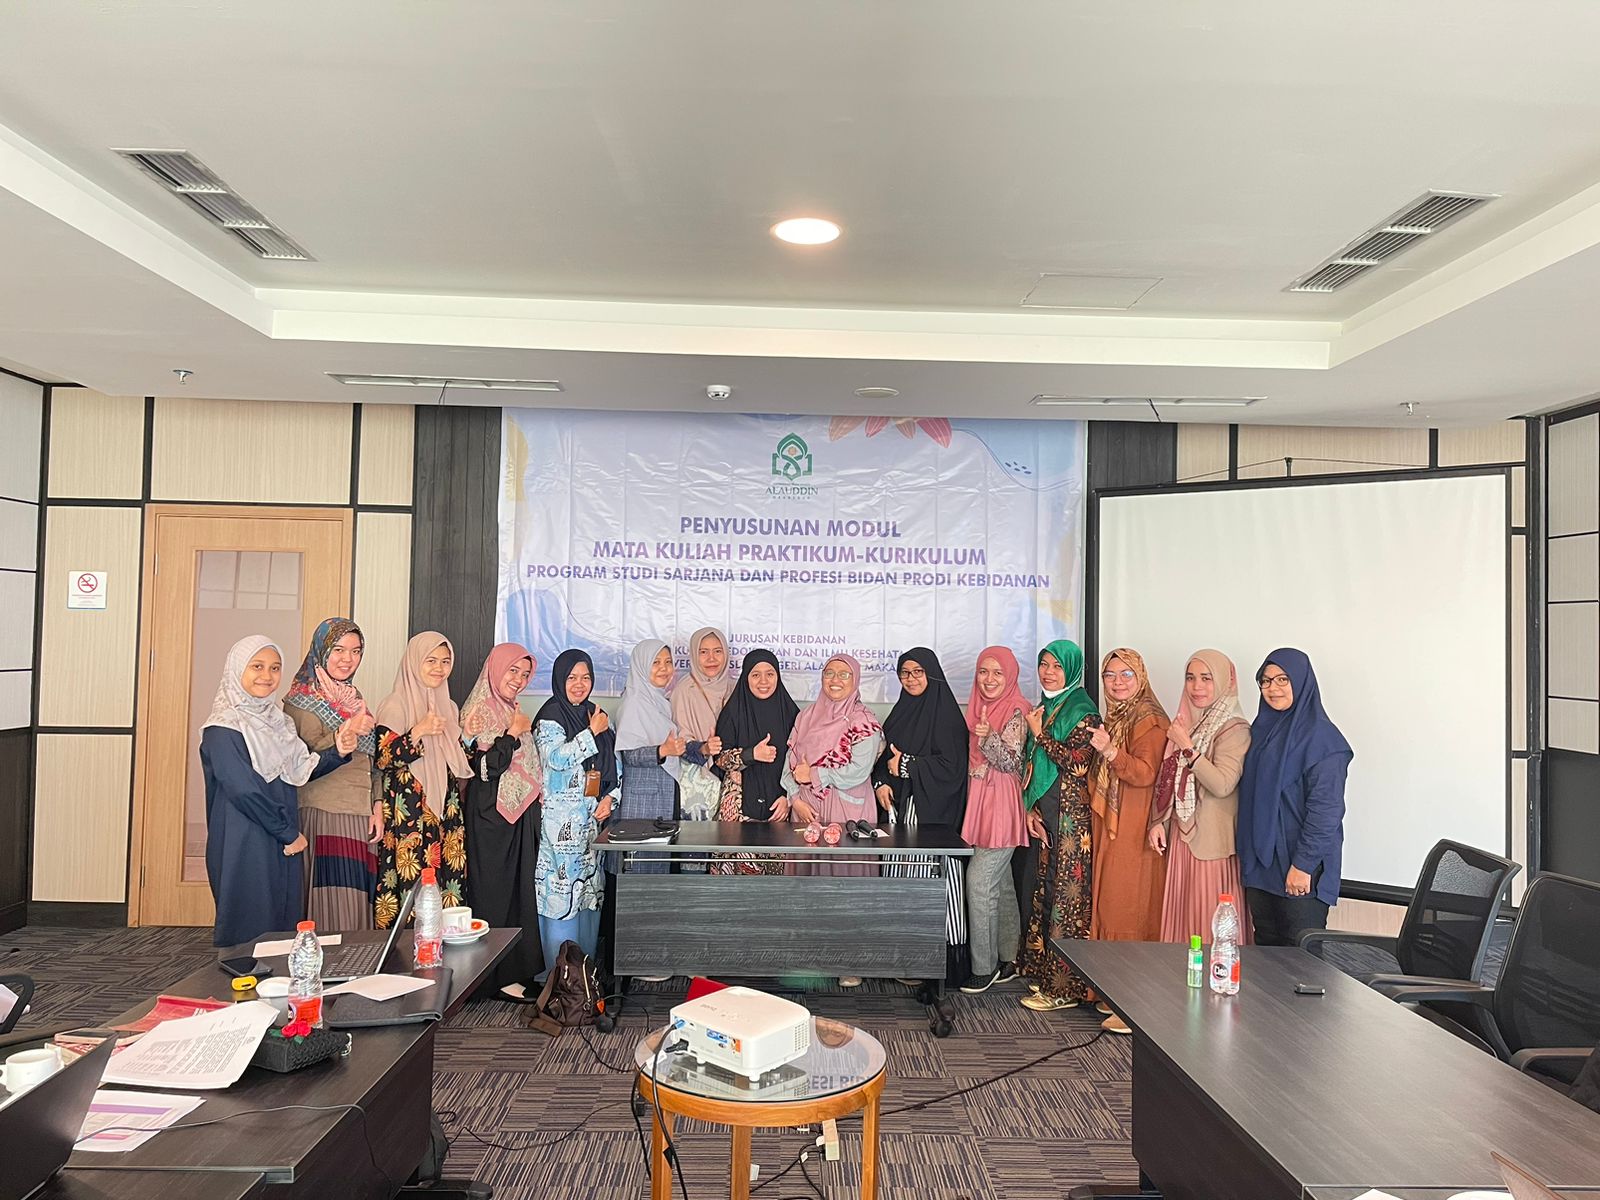 Jurusan kebidanan UIN Alauddin Makassar  telah melakukan Workshop penyusunan modul matakuliah prakti